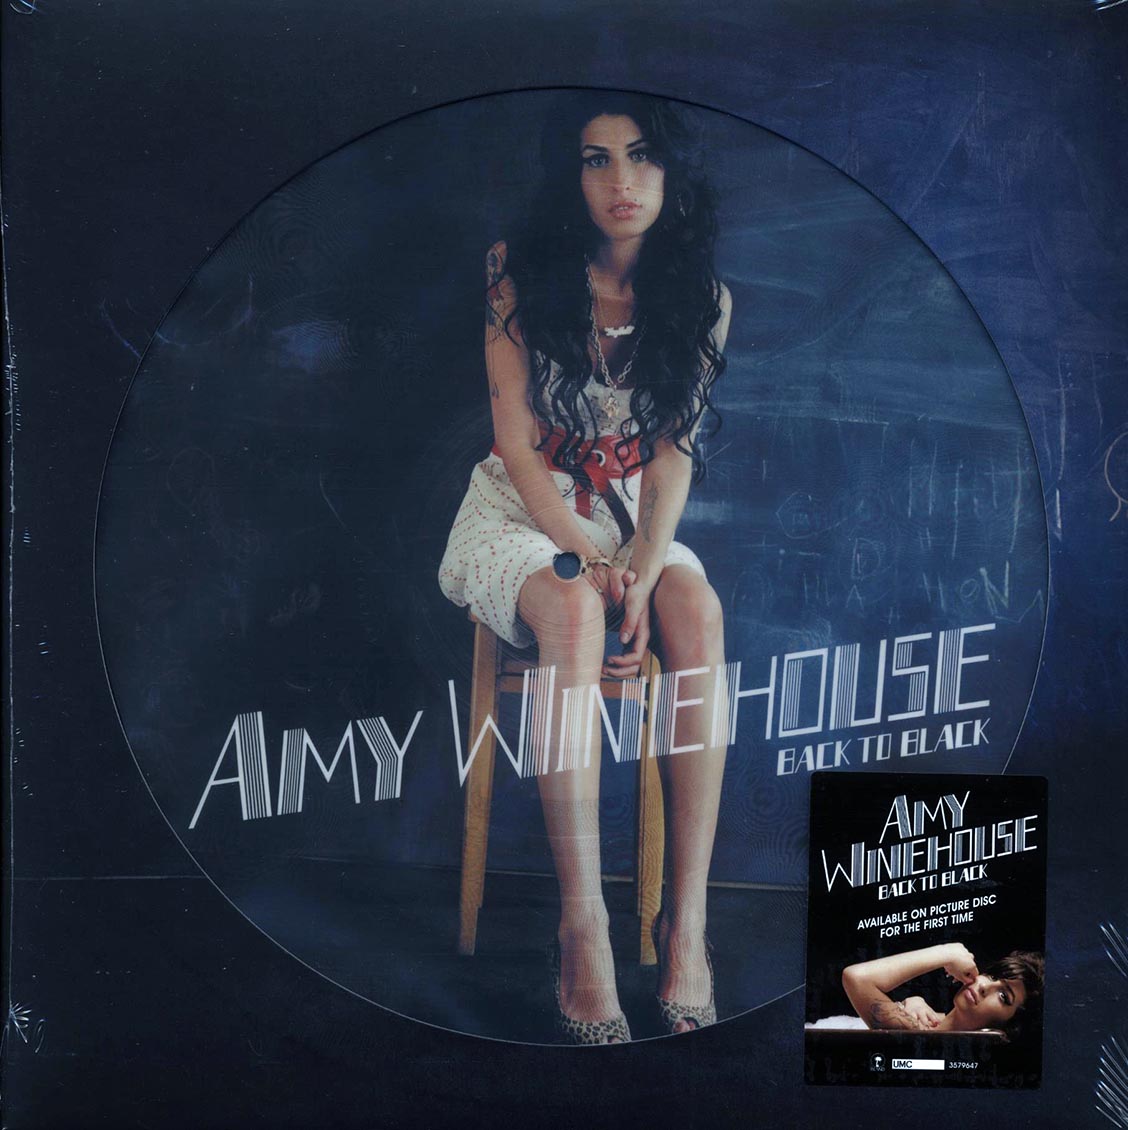 AMY WINEHOUSE Back to Black picture vinyle édition limitée 